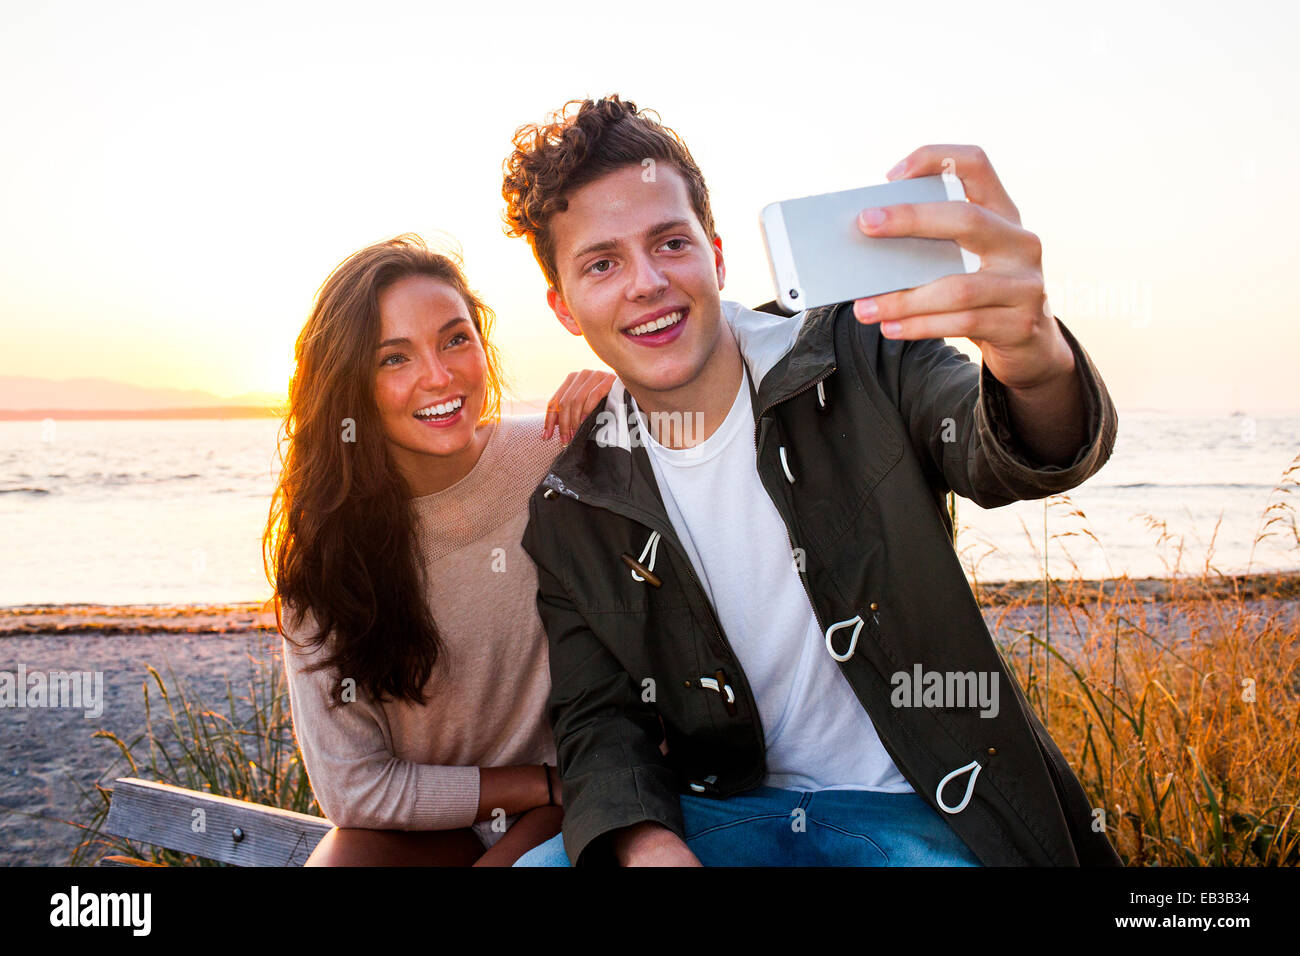 En couple on beach selfies Banque D'Images